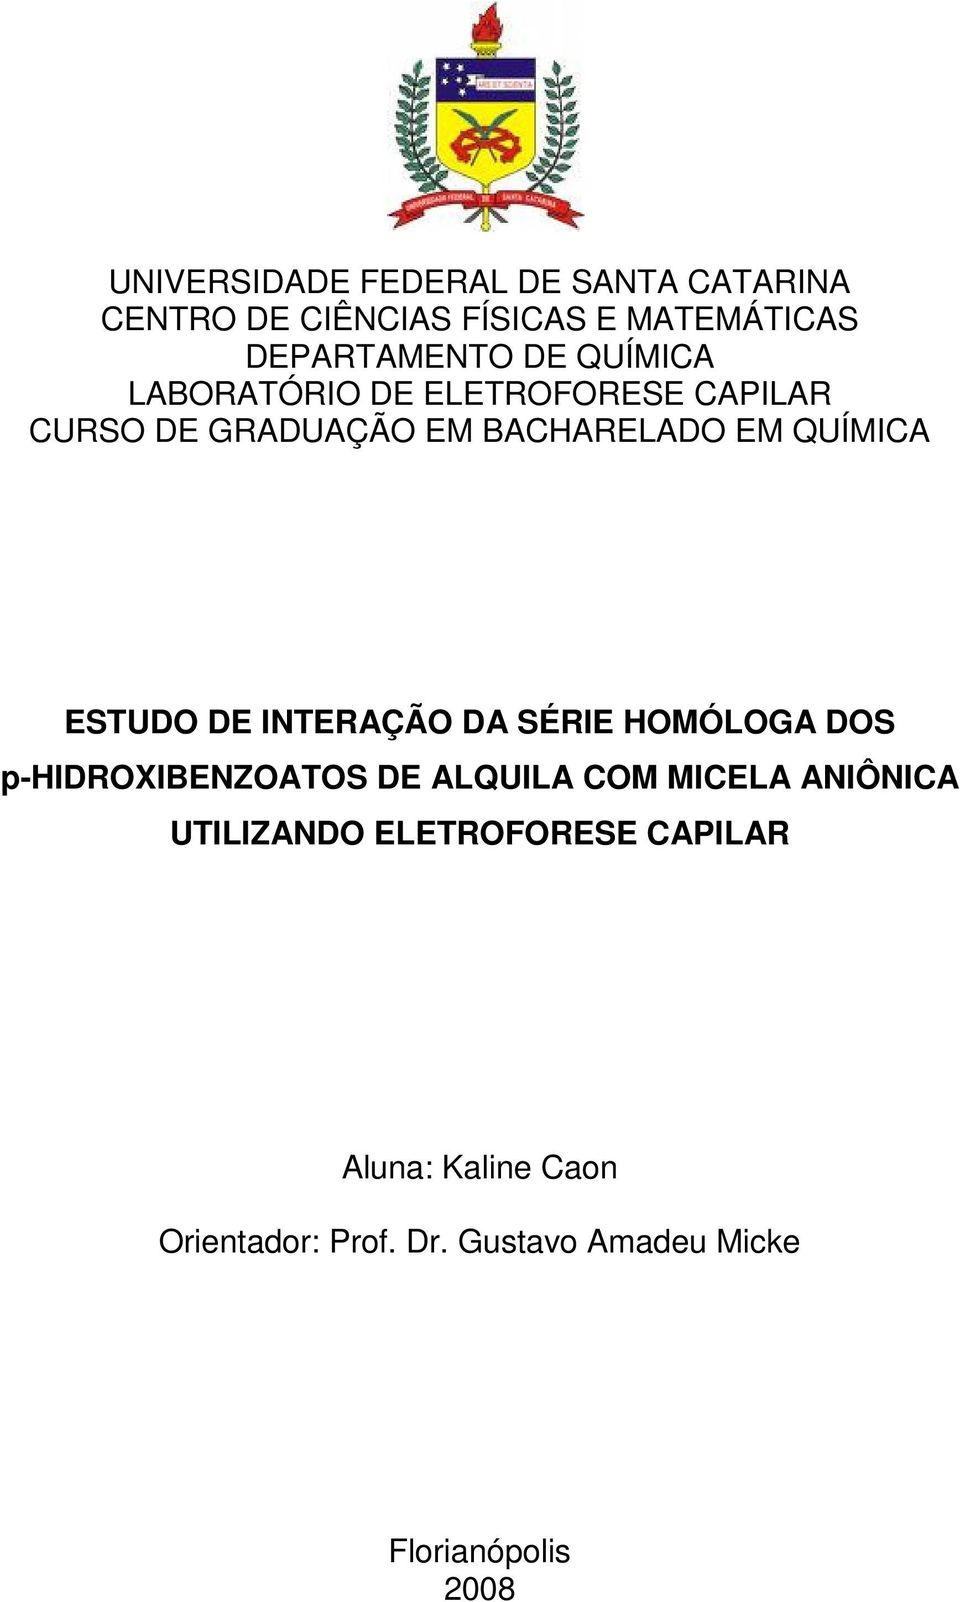 DE INTERAÇÃO DA SÉRIE HOMÓLOGA DOS p-hidroxibenzoatos DE ALQUILA COM MICELA ANIÔNICA UTILIZANDO